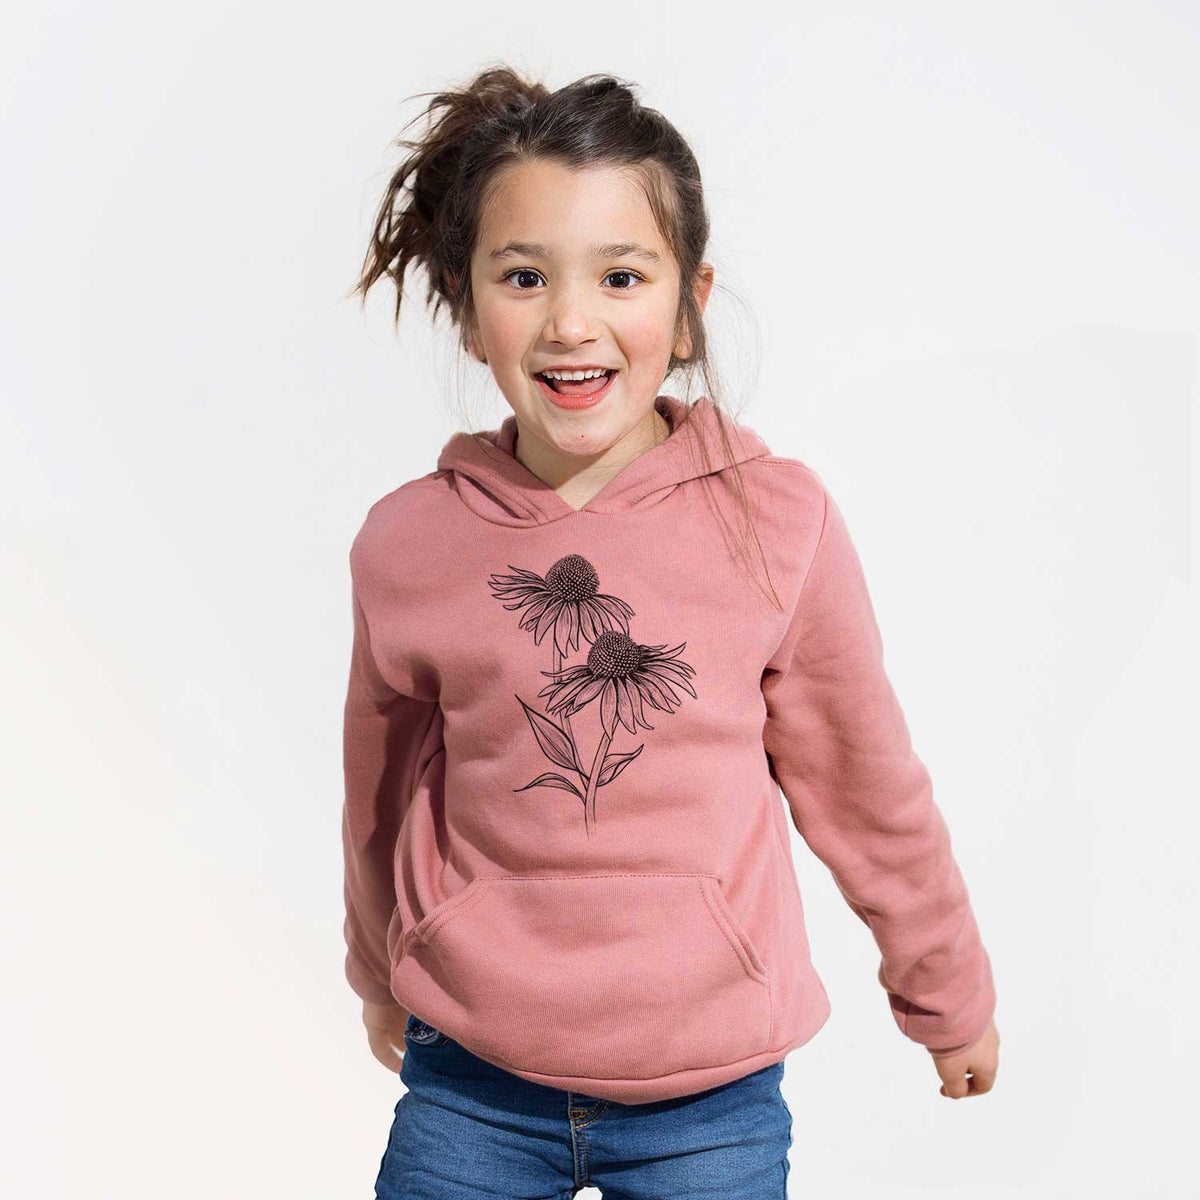 Coneflower - Echinacea purpurea - Youth Hoodie Sweatshirt